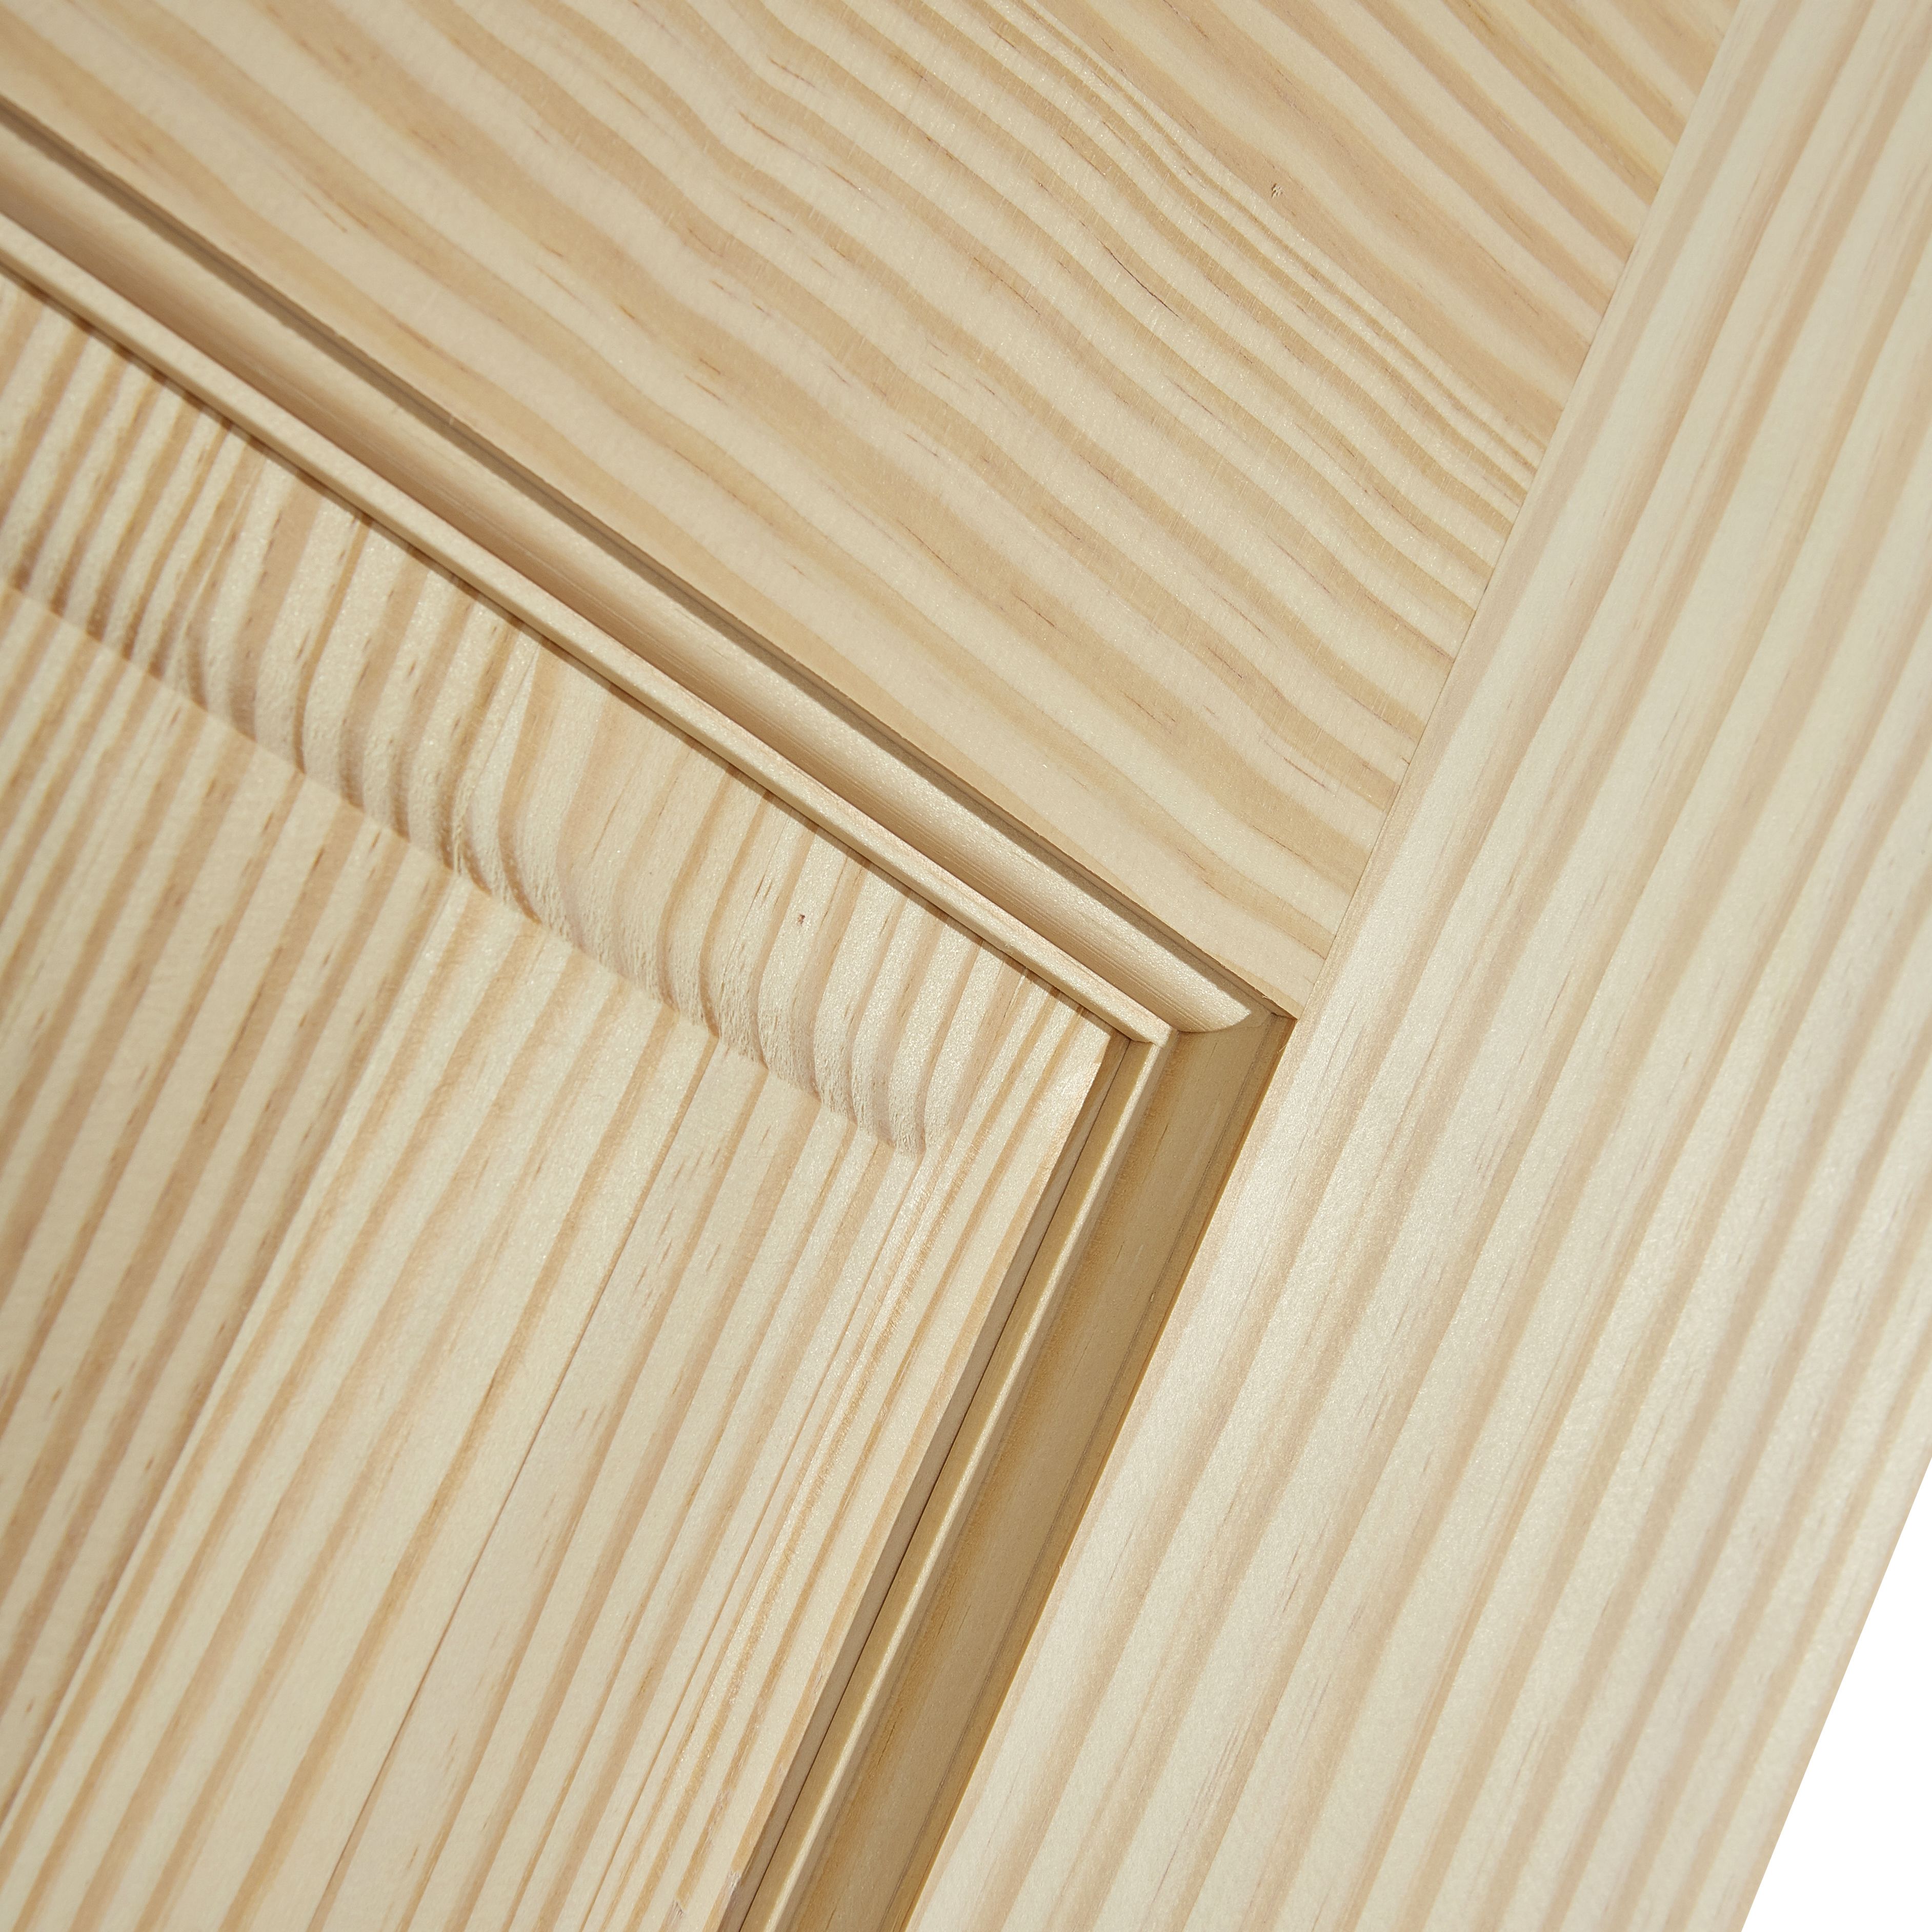 2 panel Unglazed Contemporary Pine veneer Internal Clear pine Door, (H)1981mm (W)686mm (T)35mm